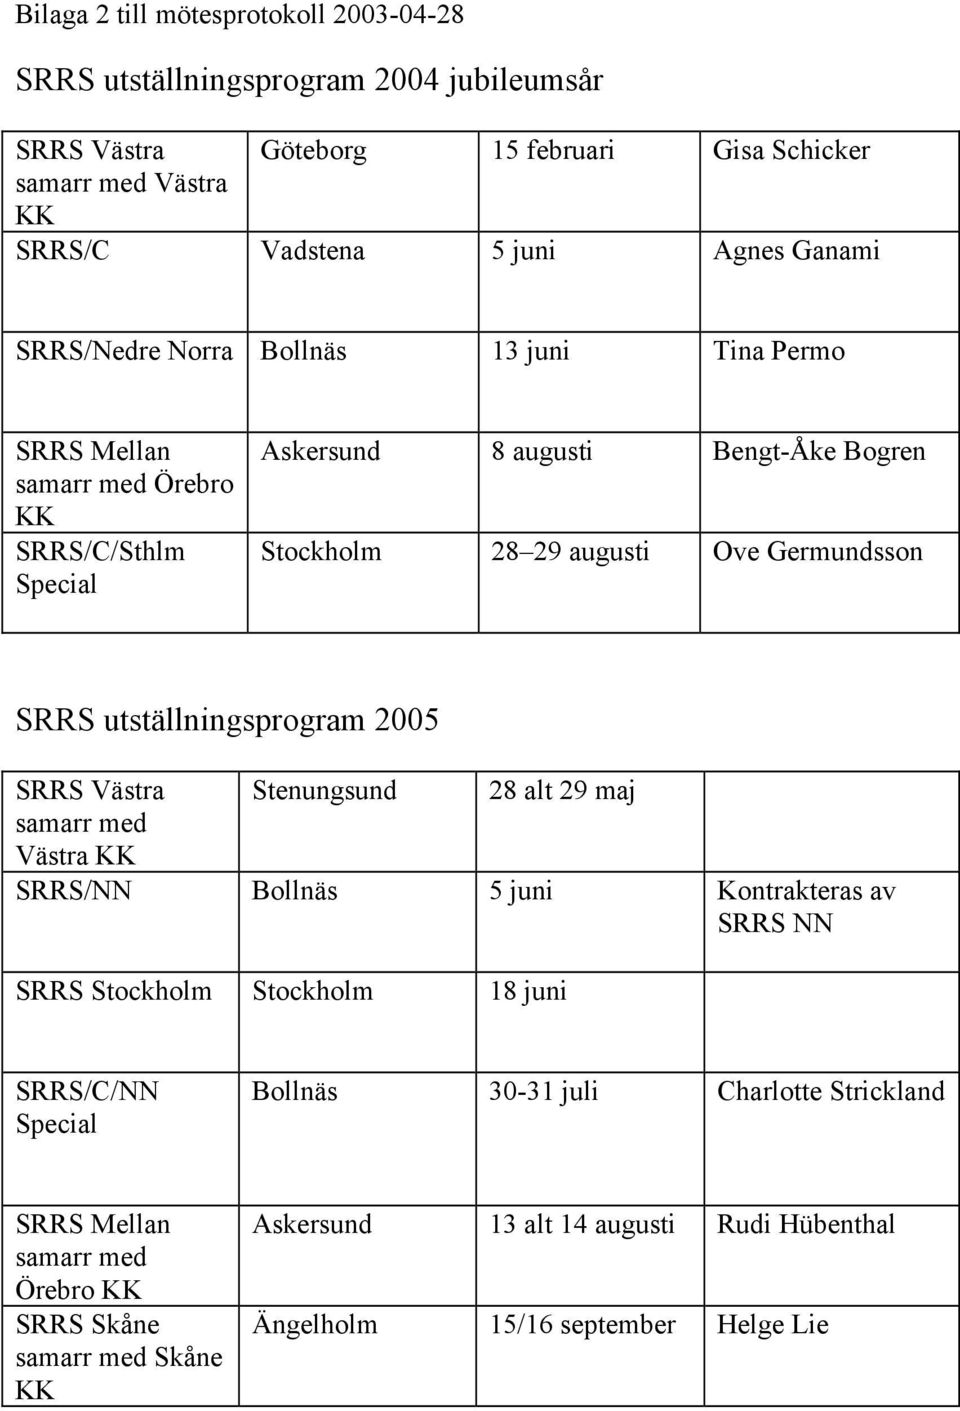 SRRS utställningsprogram 2005 SRRS Västra Stenungsund 28 alt 29 maj samarr med Västra SRRS/NN Bollnäs 5 juni Kontrakteras av SRRS NN SRRS Stockholm Stockholm 18 juni SRRS/C/NN